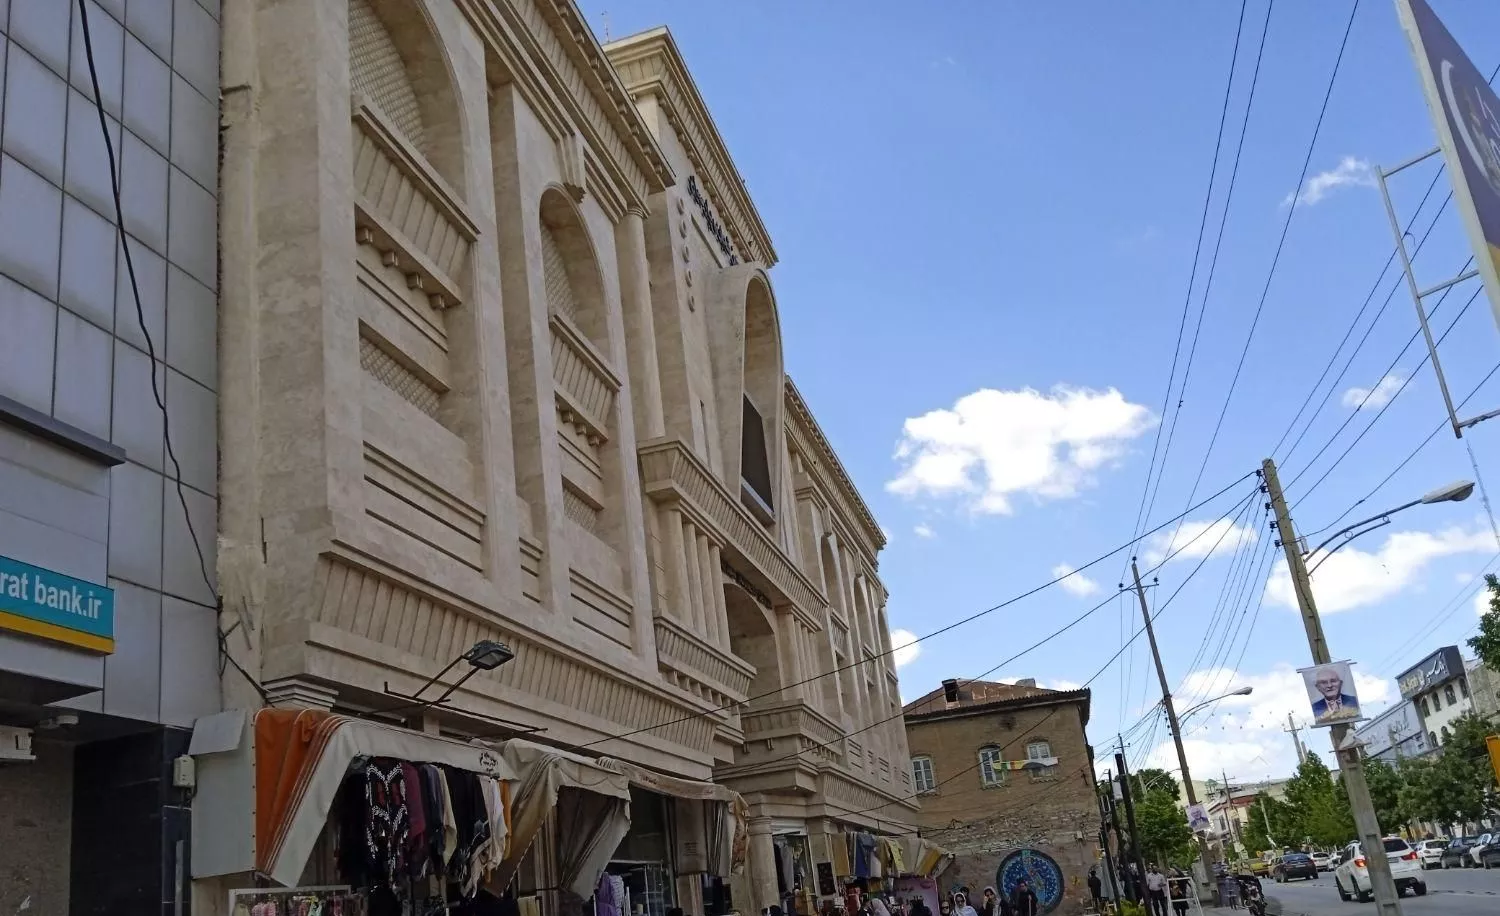 مغازه طلافروشی خیابان  مدرس پاساژ پارسیان